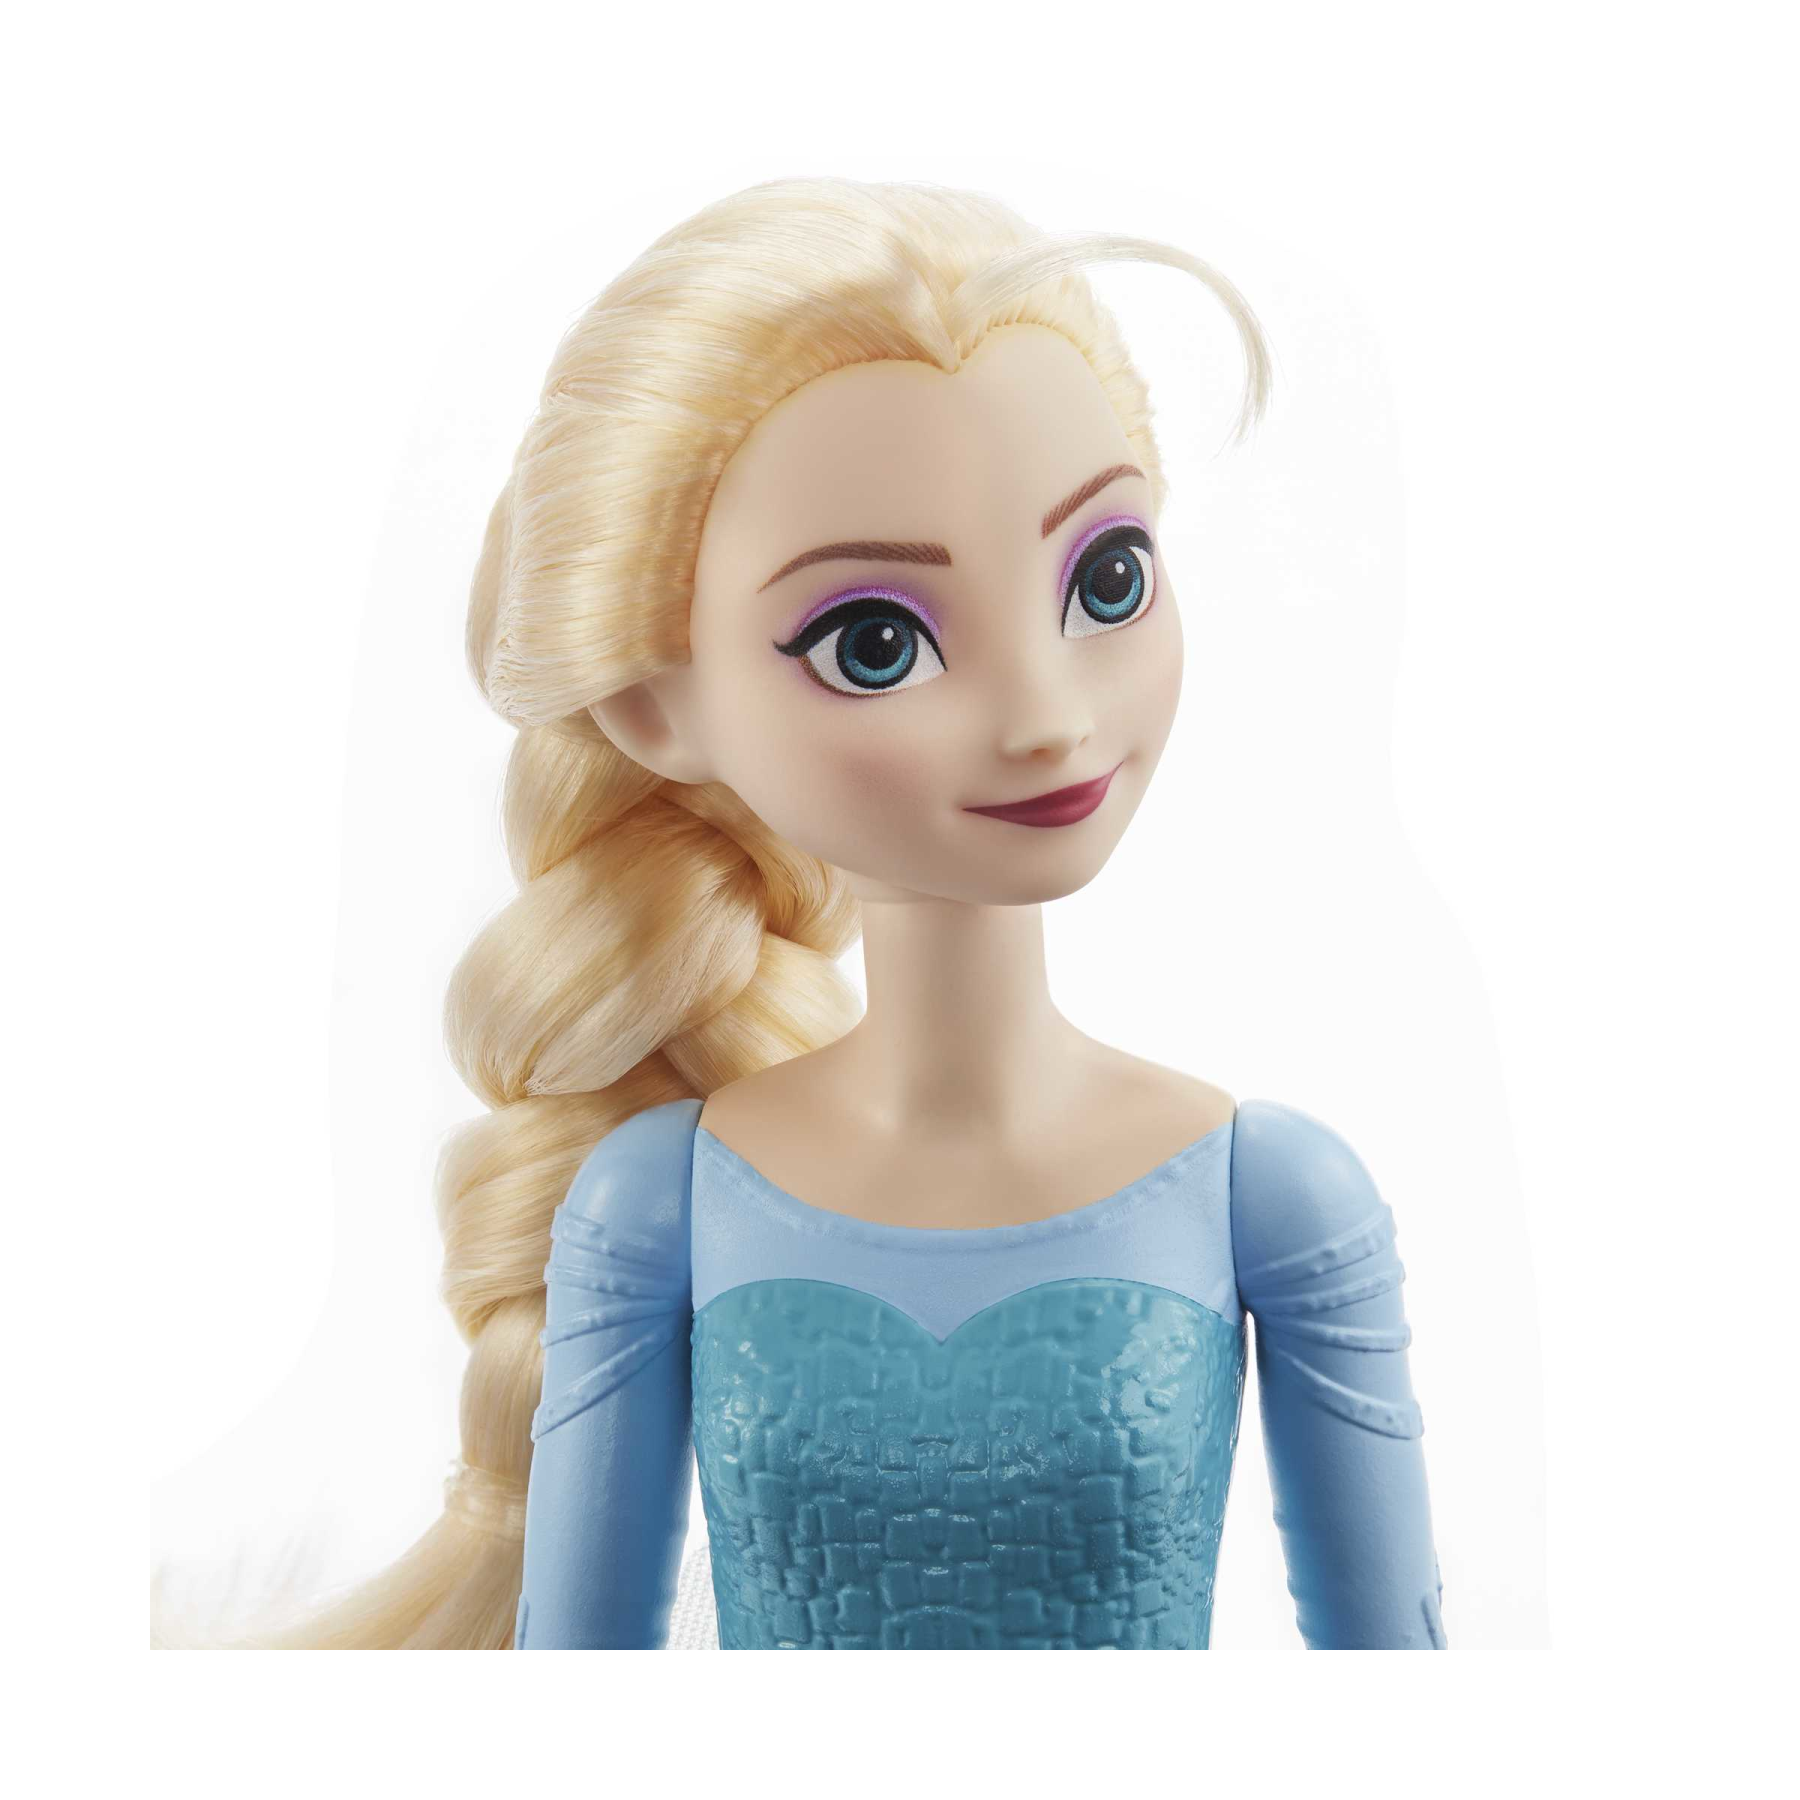 Disney frozen - elsa bambola con abito esclusivo e accessori ispirati ai film disney frozen 1, giocattolo per bambini, 3+ anni, hlw47 - DISNEY PRINCESS, Frozen